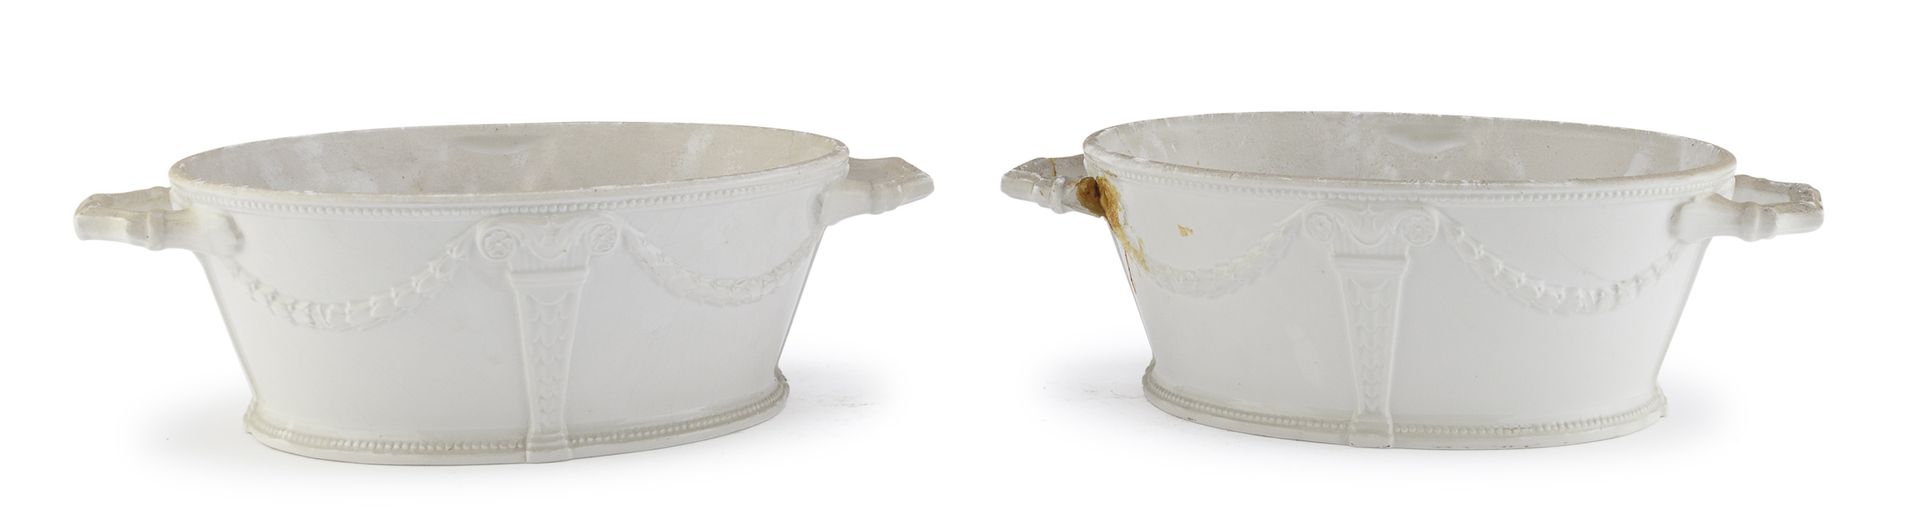 Null 一对陶制碗，20世纪


全部为白色珐琅，主体为花环，手柄为棍状。


尺寸为13 x 40 x 25厘米。